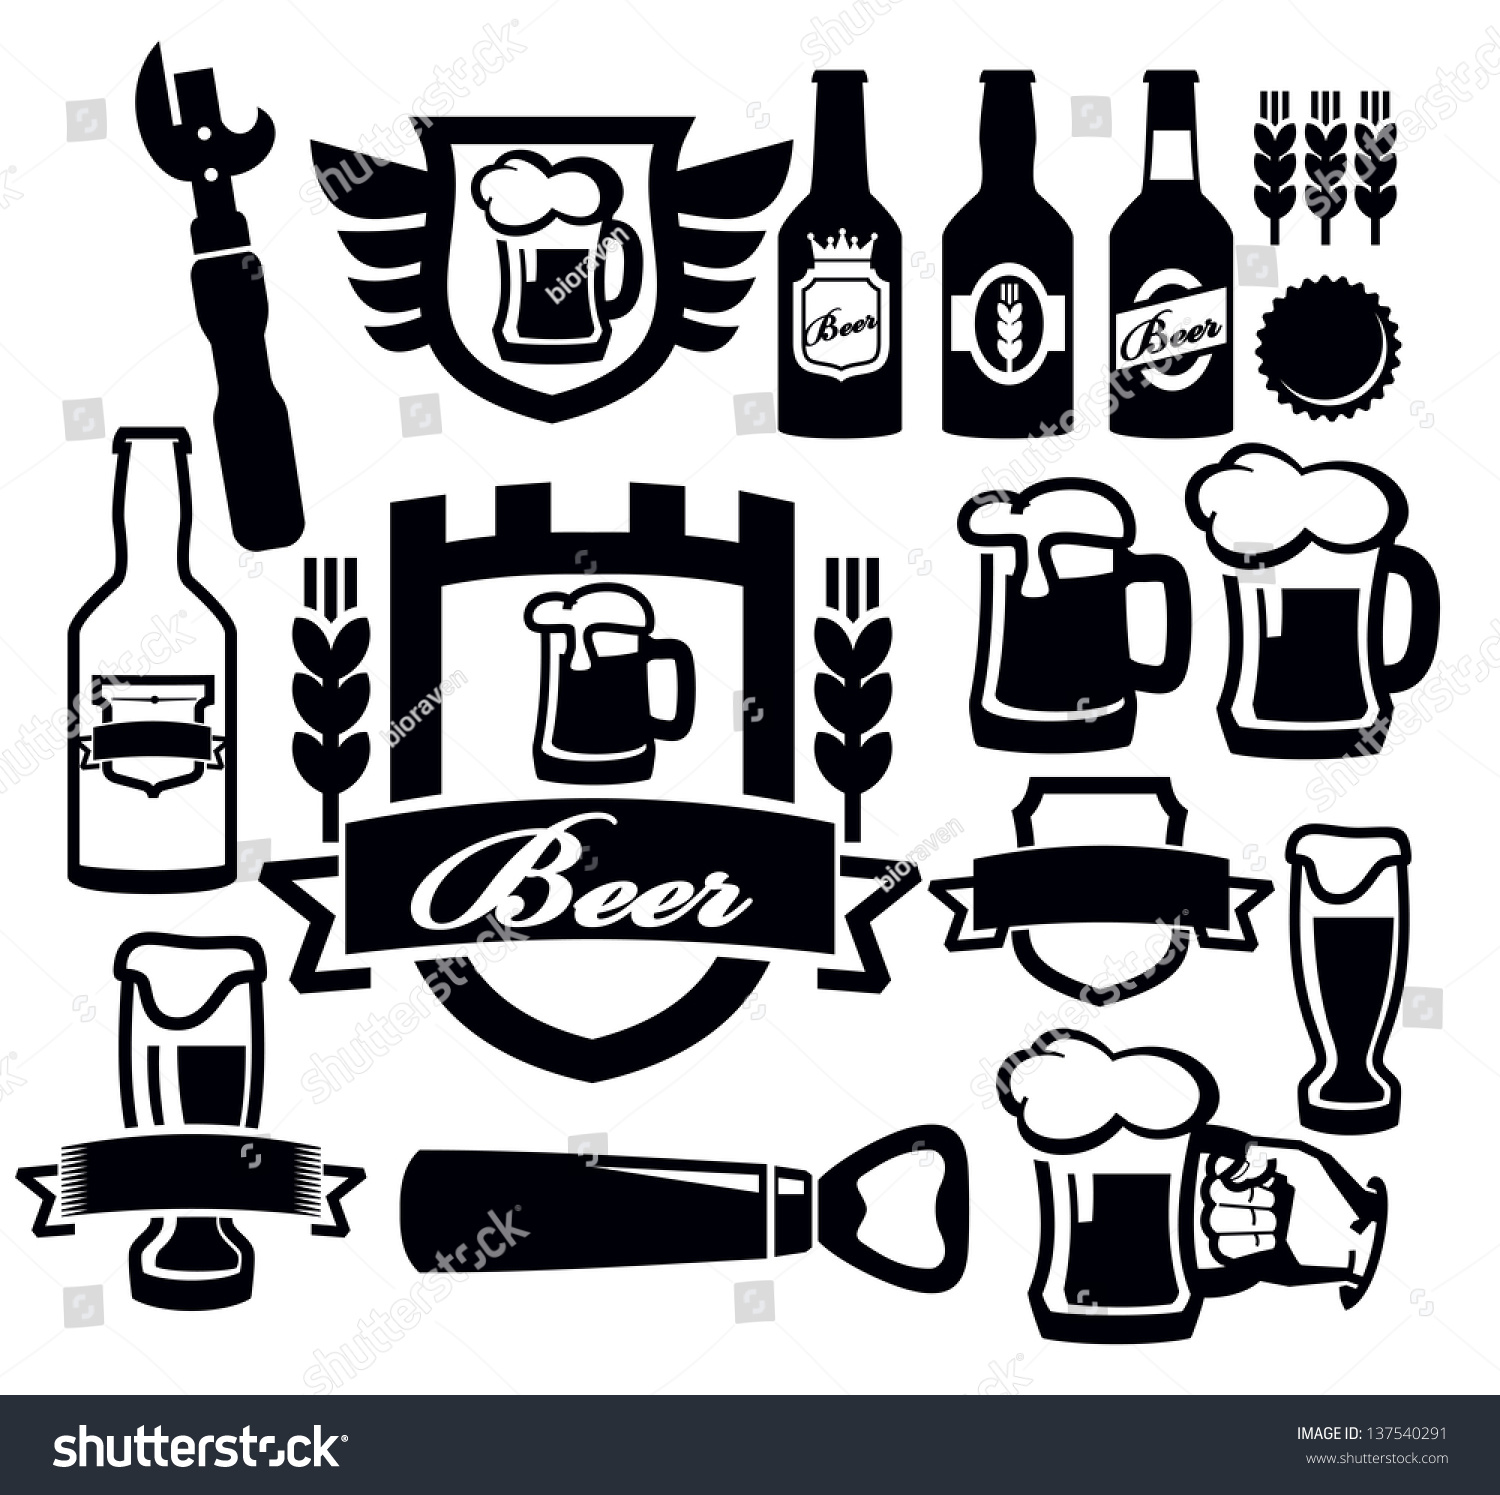 Vector Black Beer Icon Set On Stock Vector 137540291 - Shutterstock